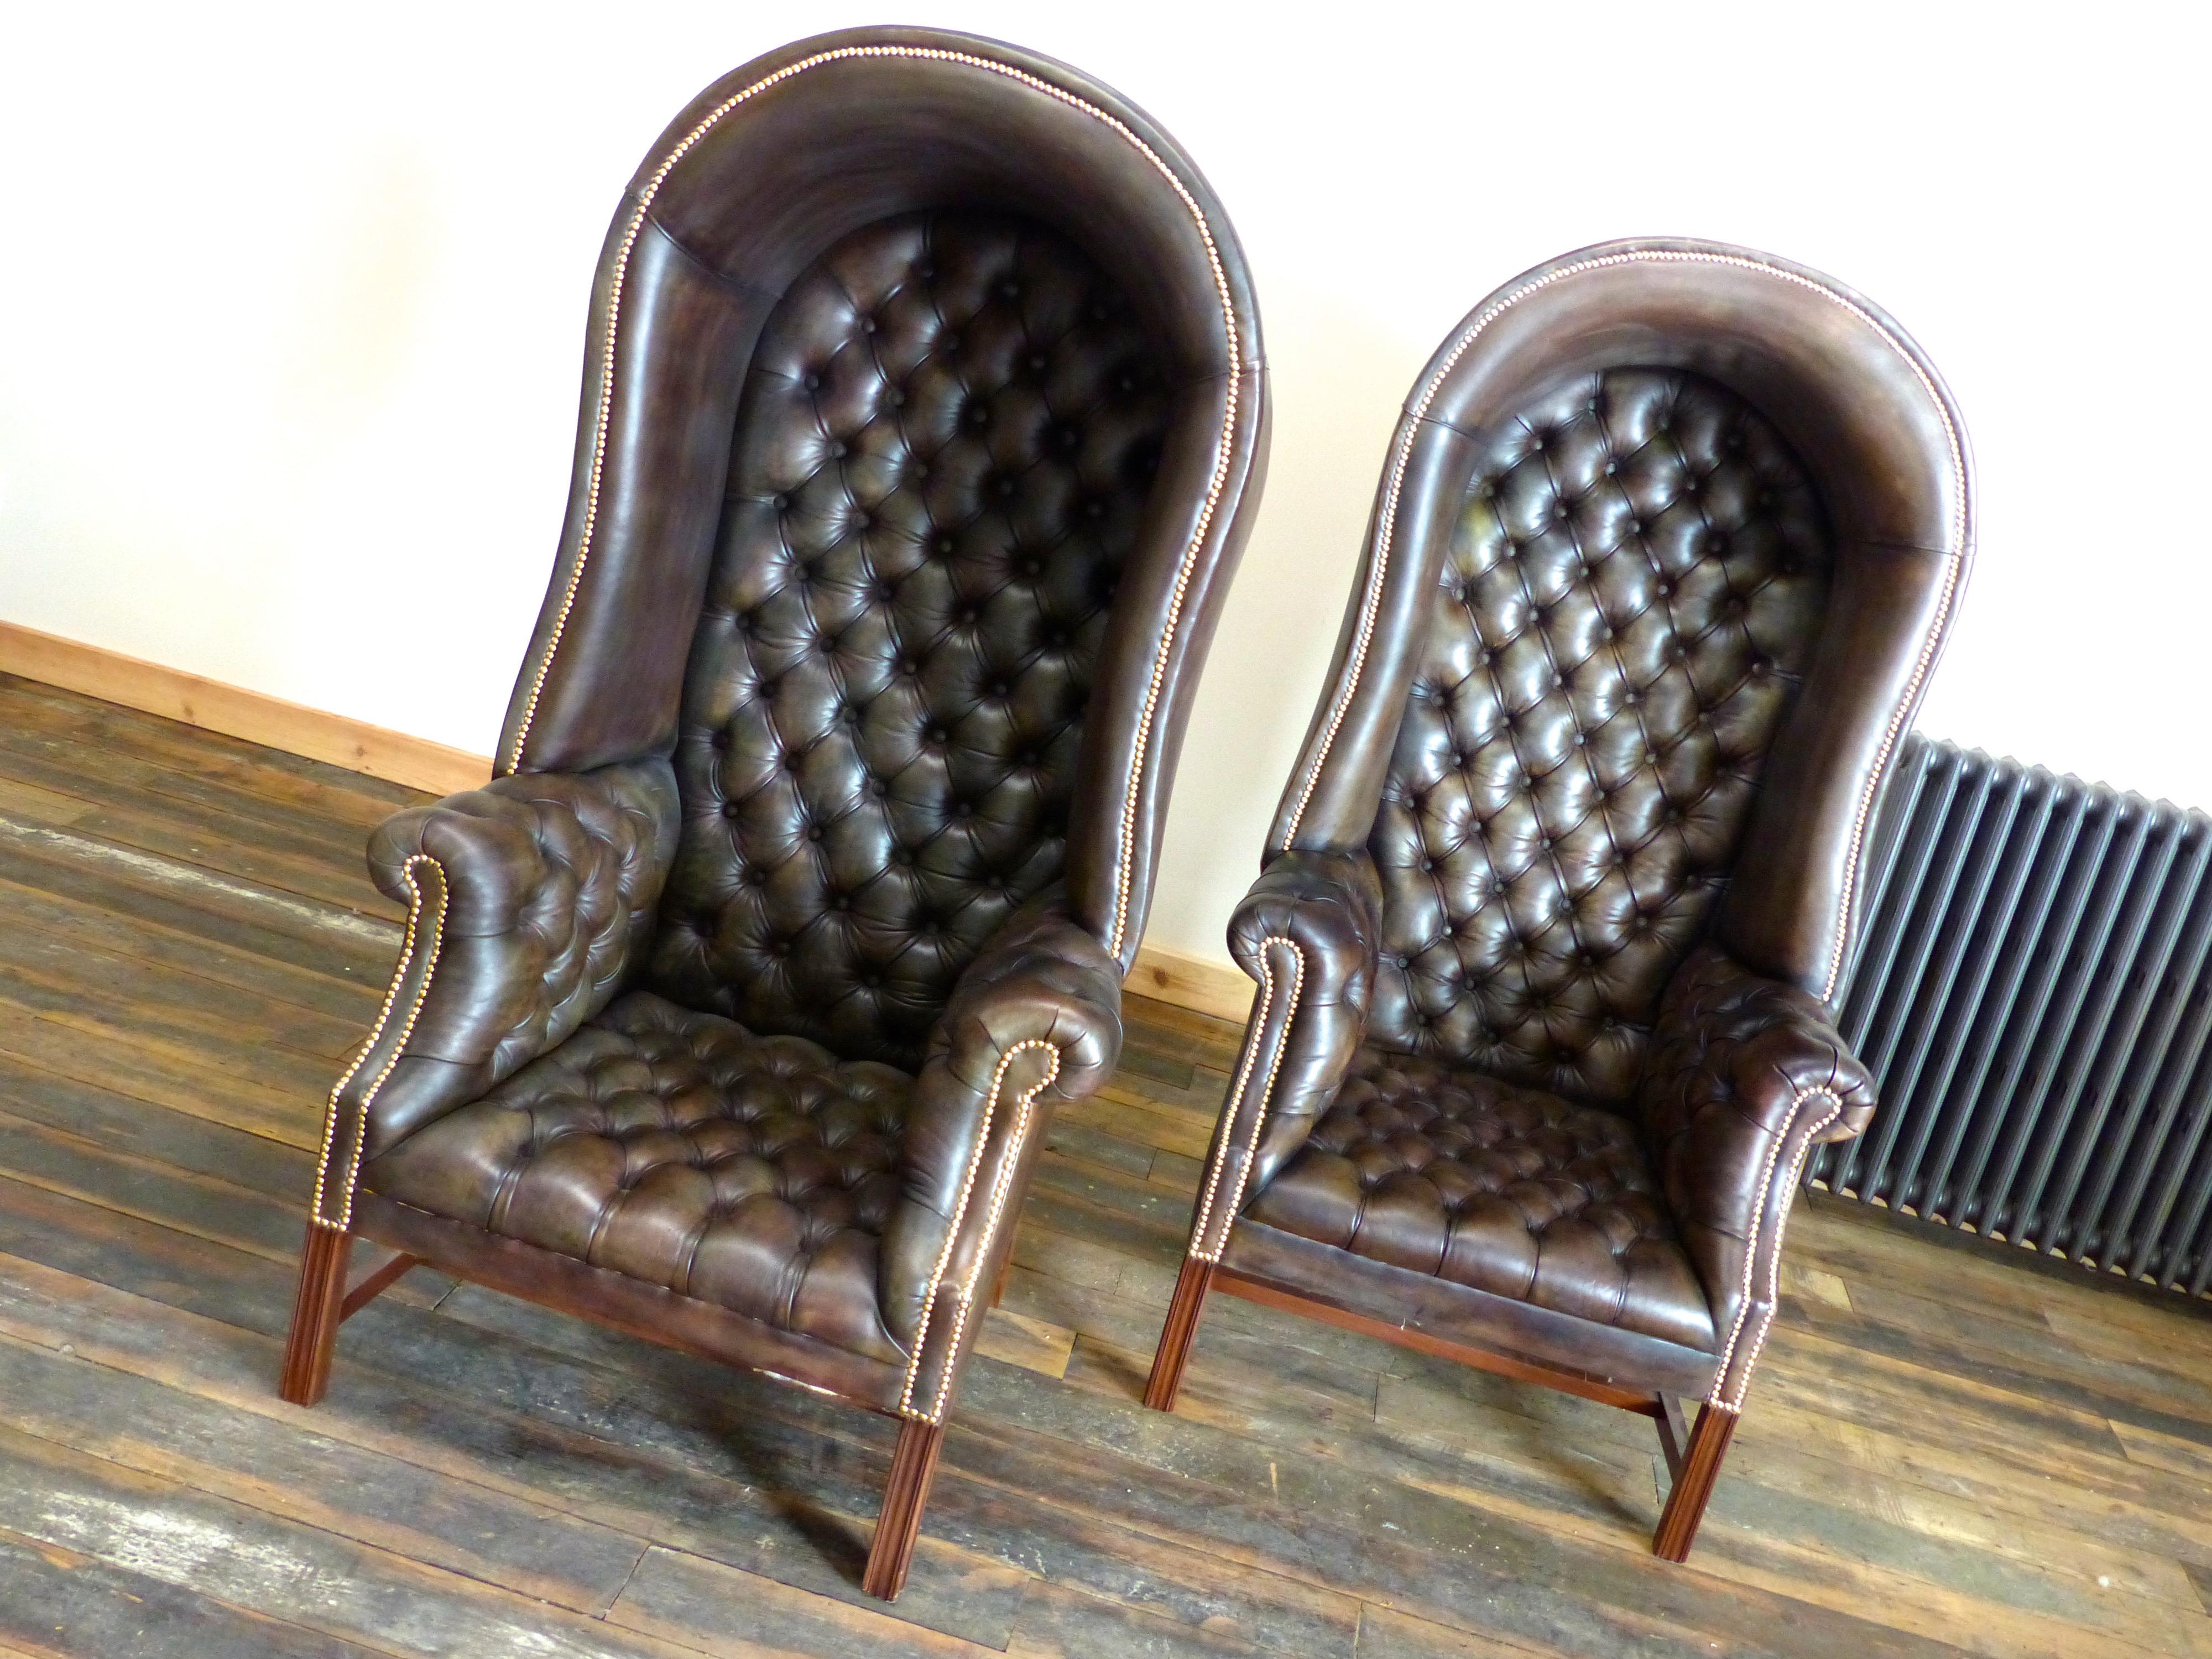 C'est le cas. Une paire de chaises Victoriennes Porters que nous fabriquons sur commande et sur mesure.

Le style est très honnête dans son interprétation et ses sentiments.  Ces pièces apportent beaucoup de style et de gravité à l'espace.

Nous